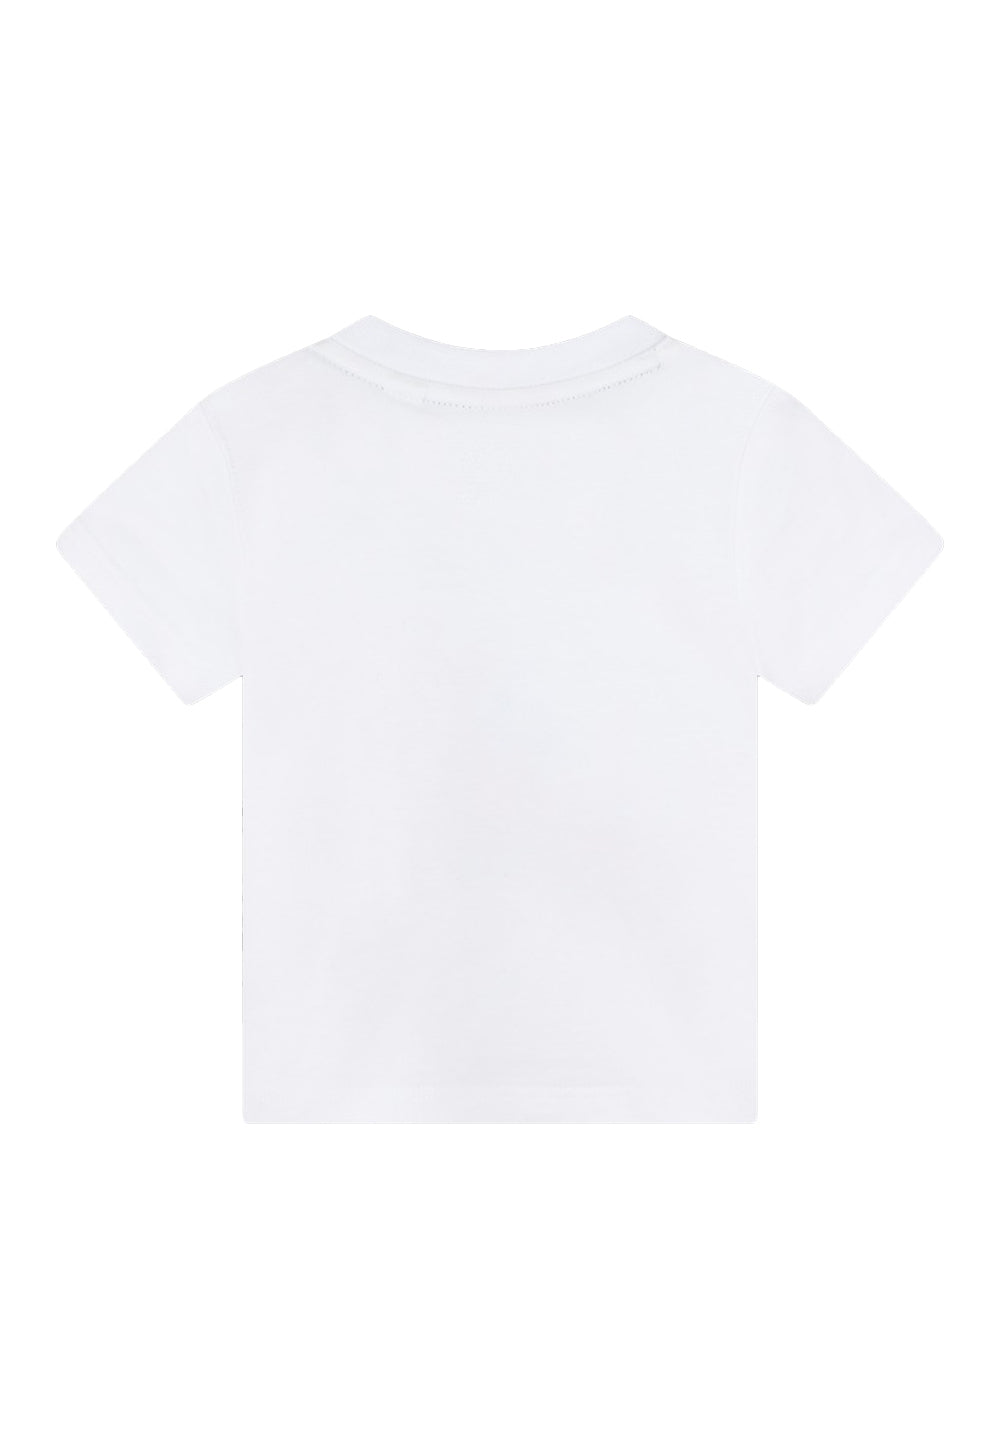 White t-shirt for newborn